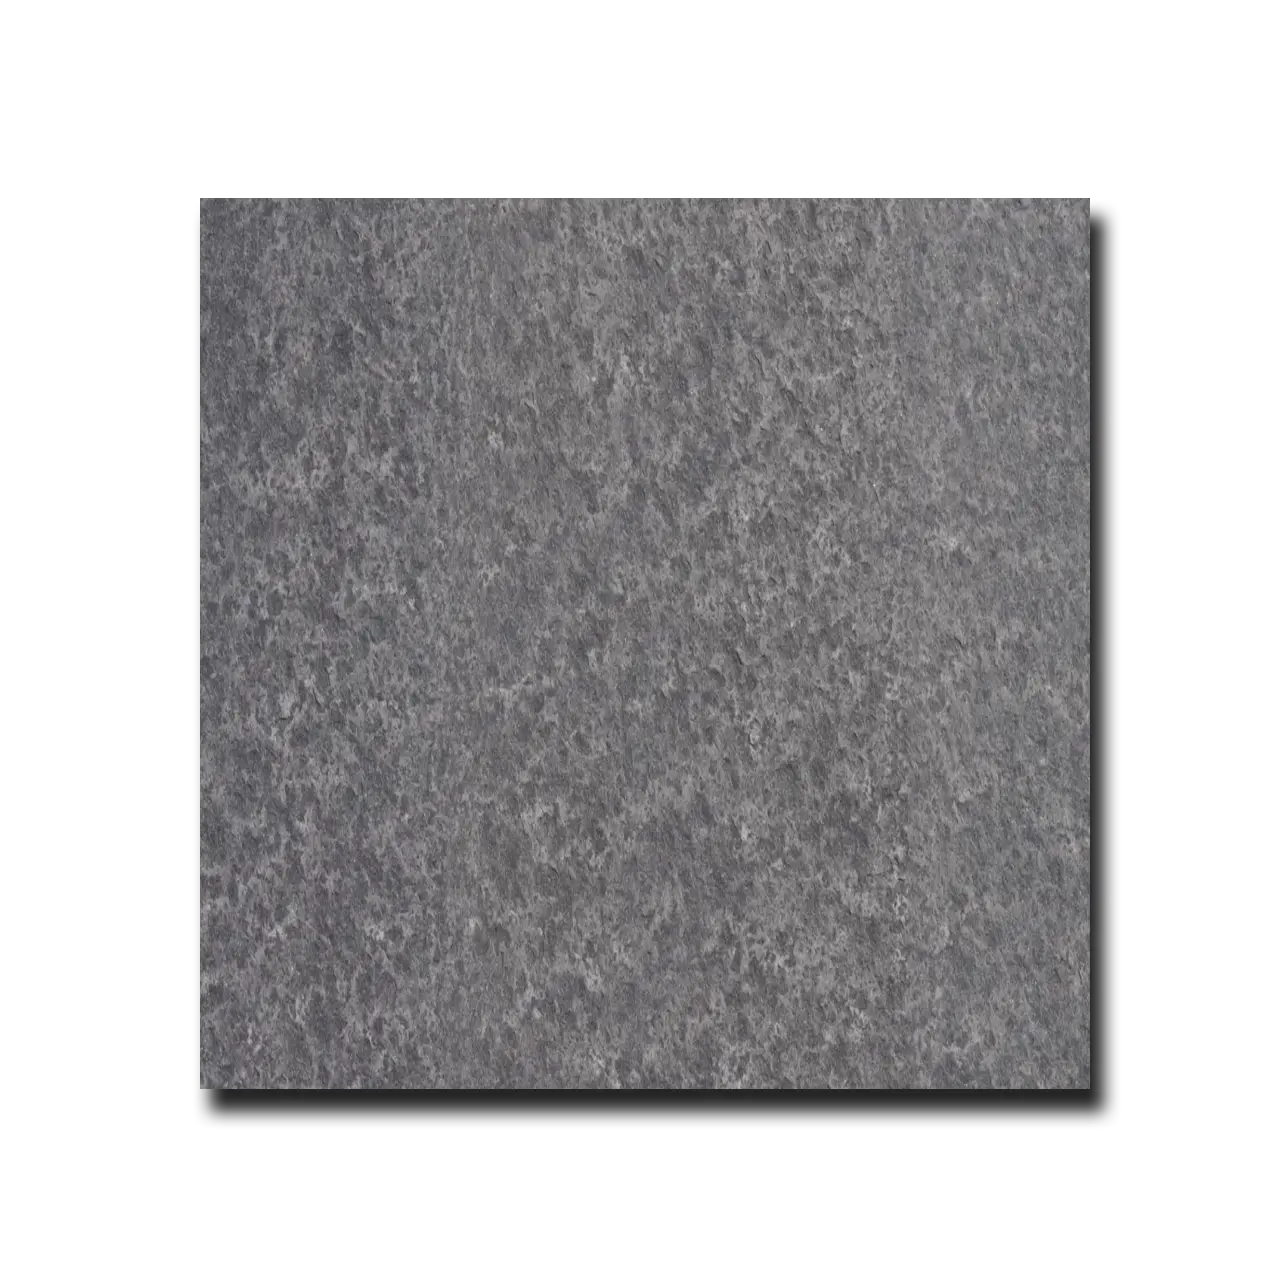 Black Basalt Basalt Tile Flamed 24" x 24" 3/8" Tile